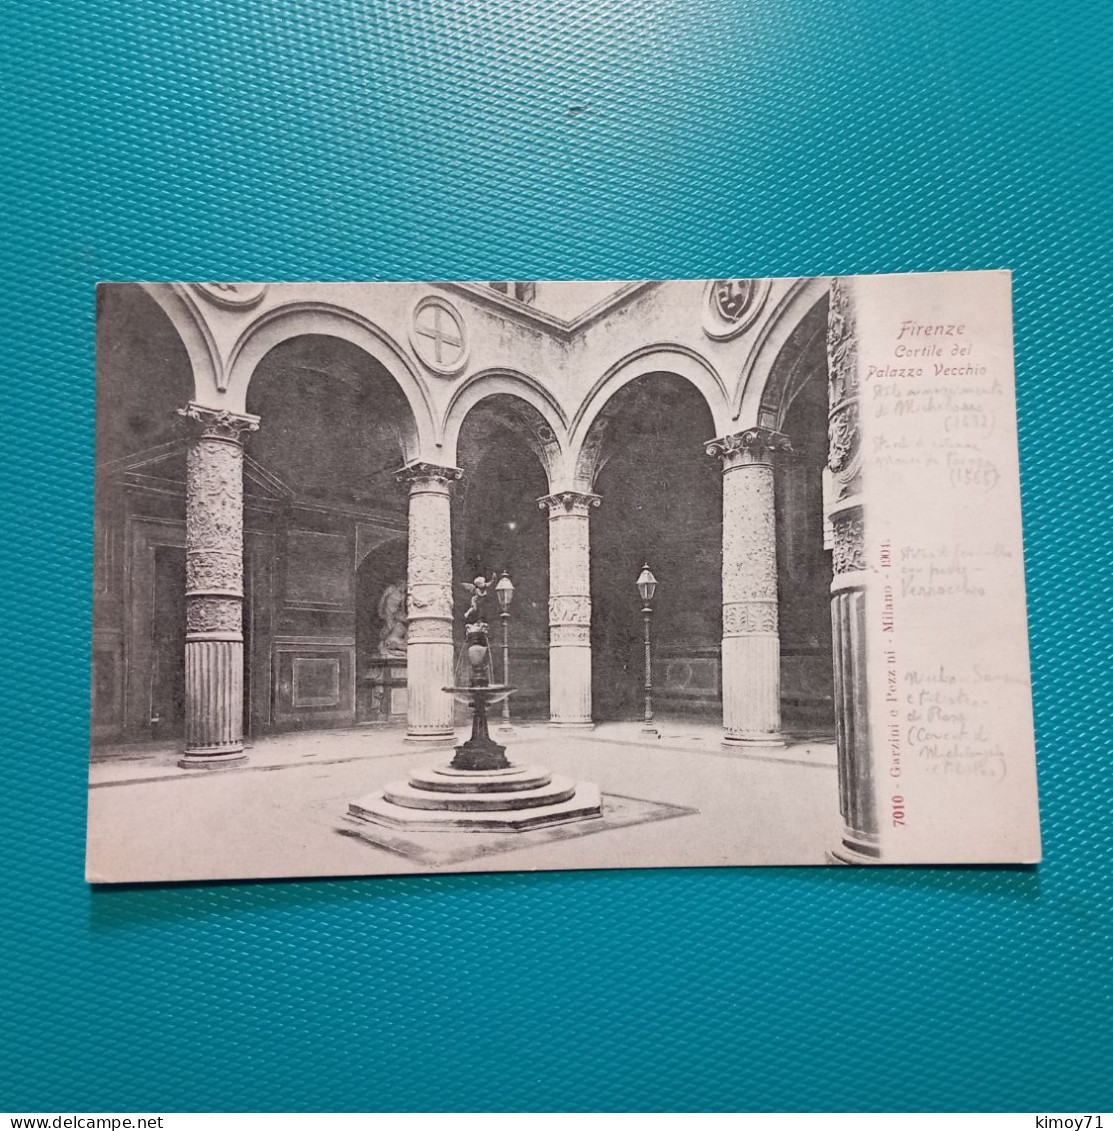 Cartolina Firenze - Cortile Del Palazzo Vecchio. Non Viaggiata - Firenze (Florence)